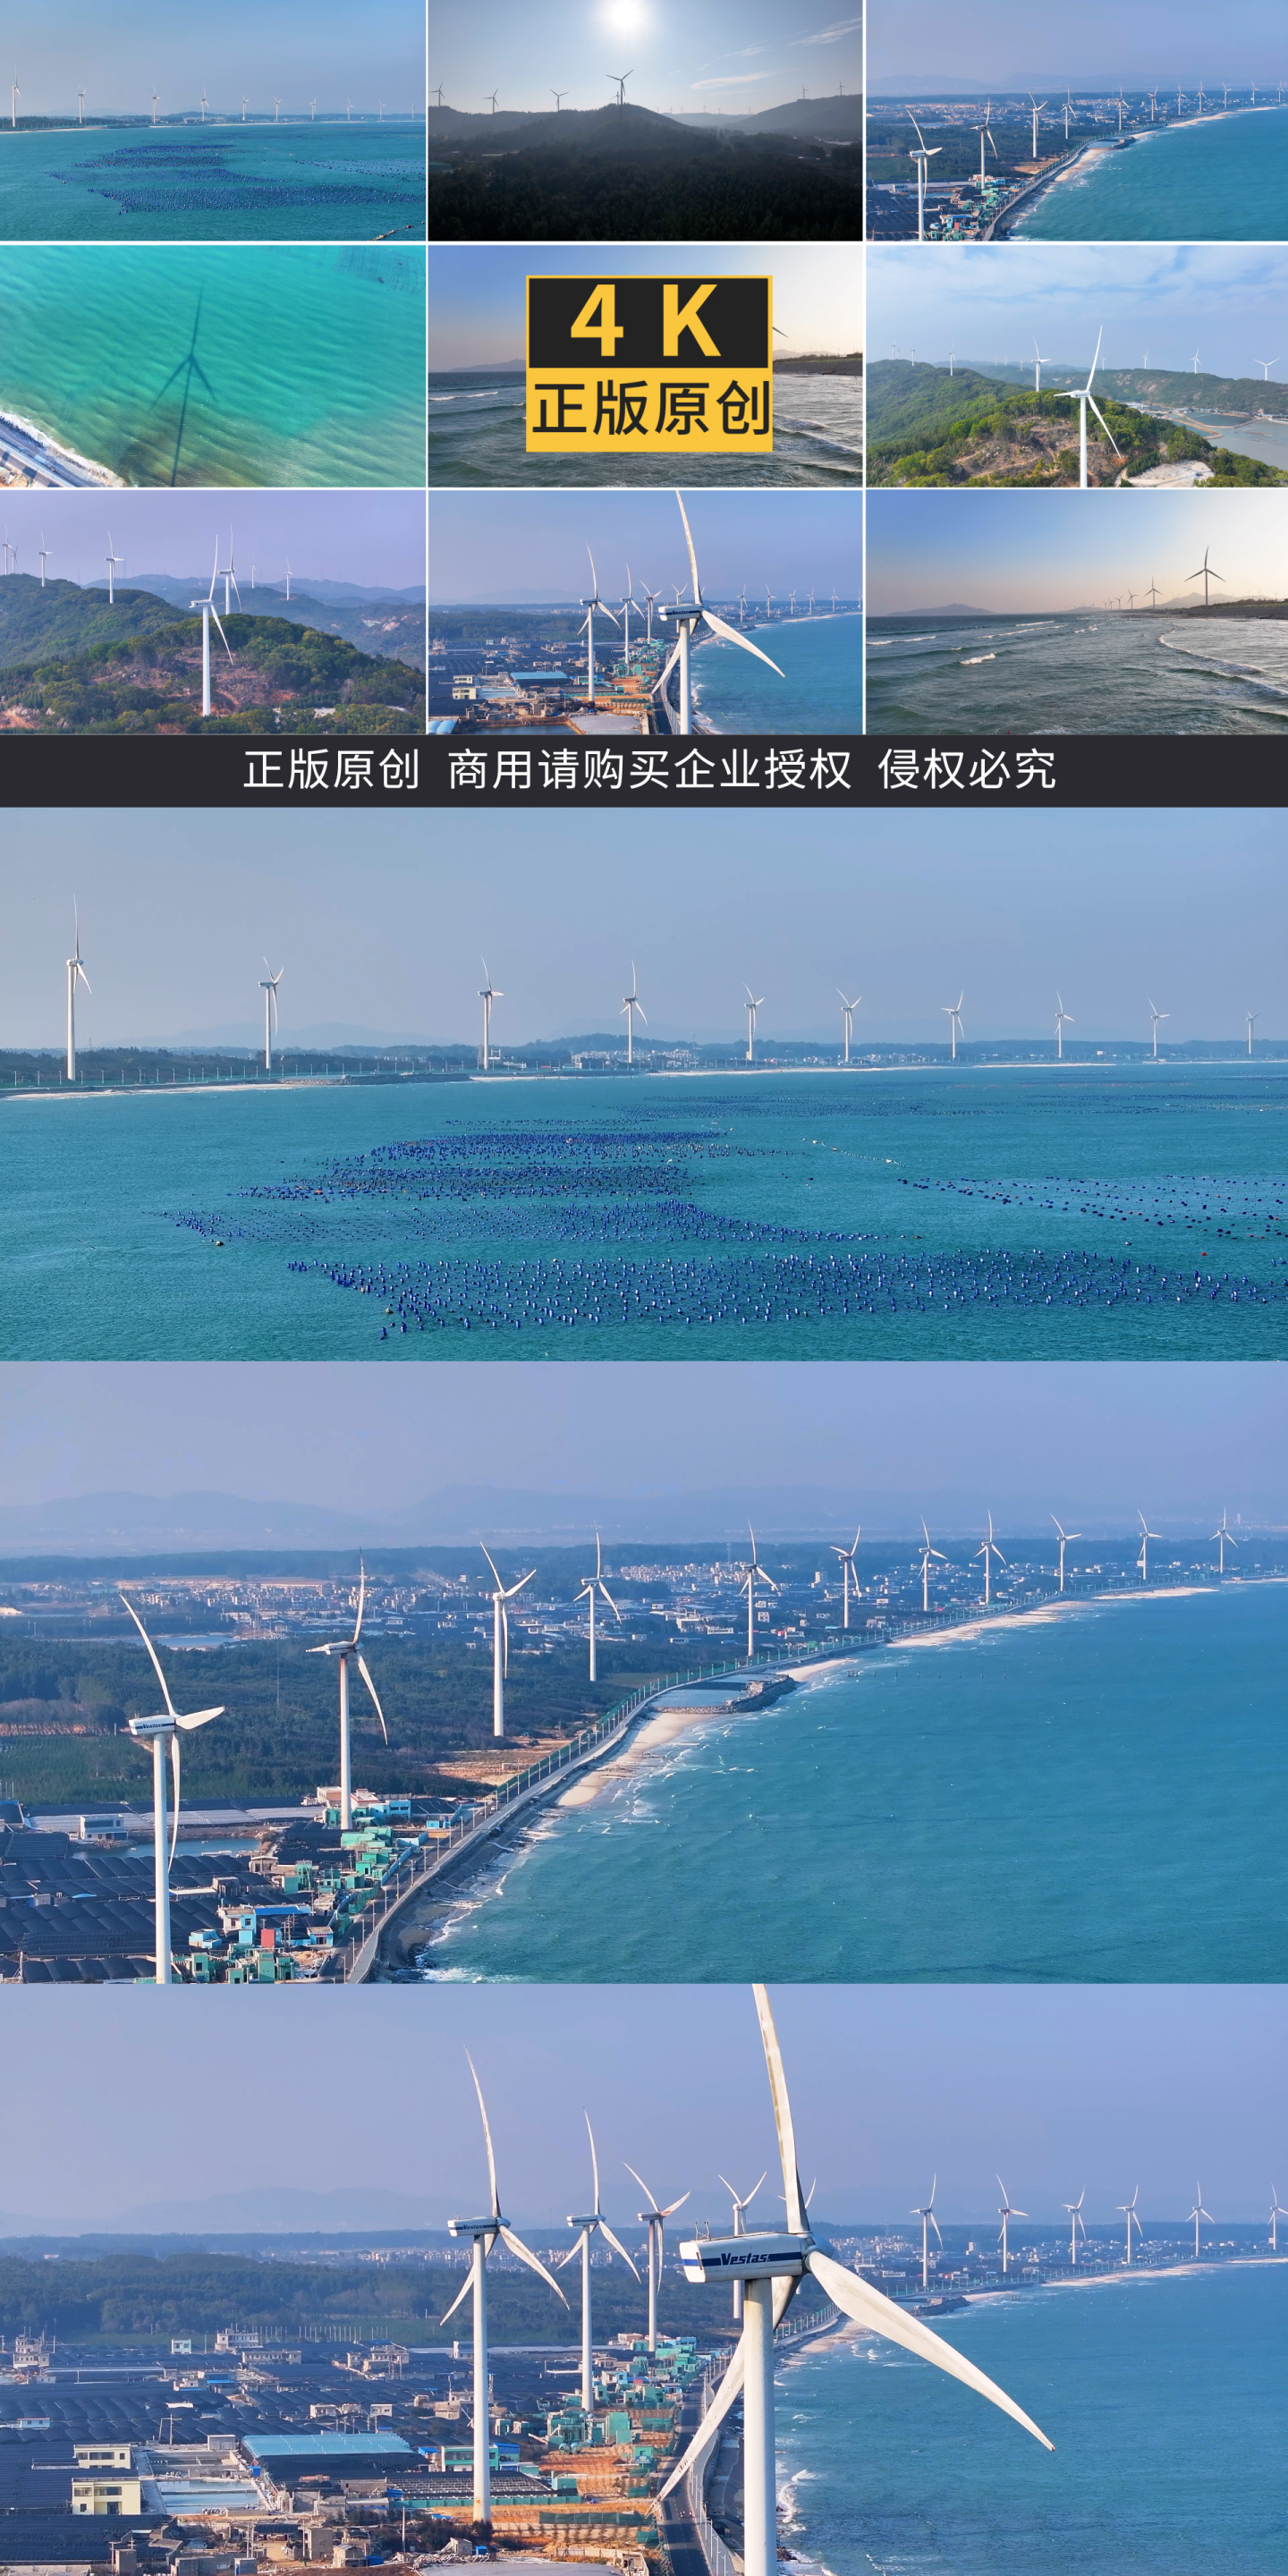 海边风力风车绿色低碳发电绿色能源-2